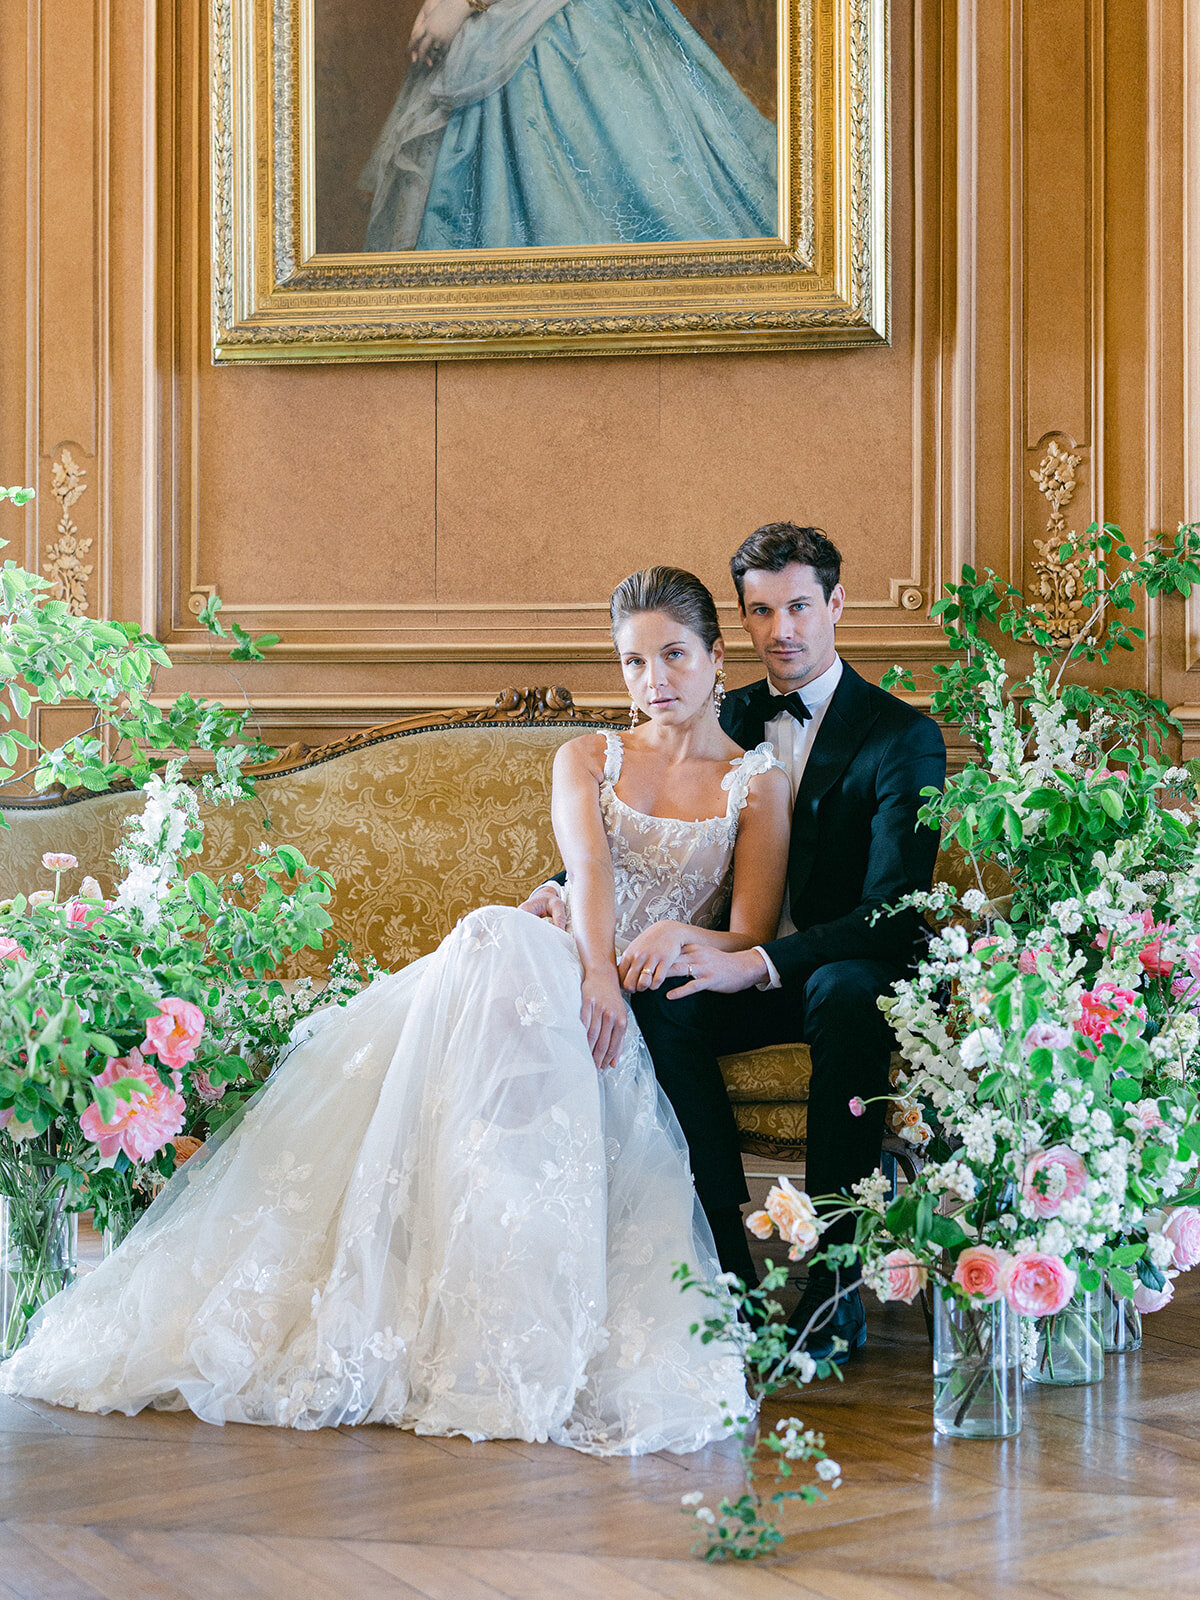 les mariés sur un sofa entouré de fleurs